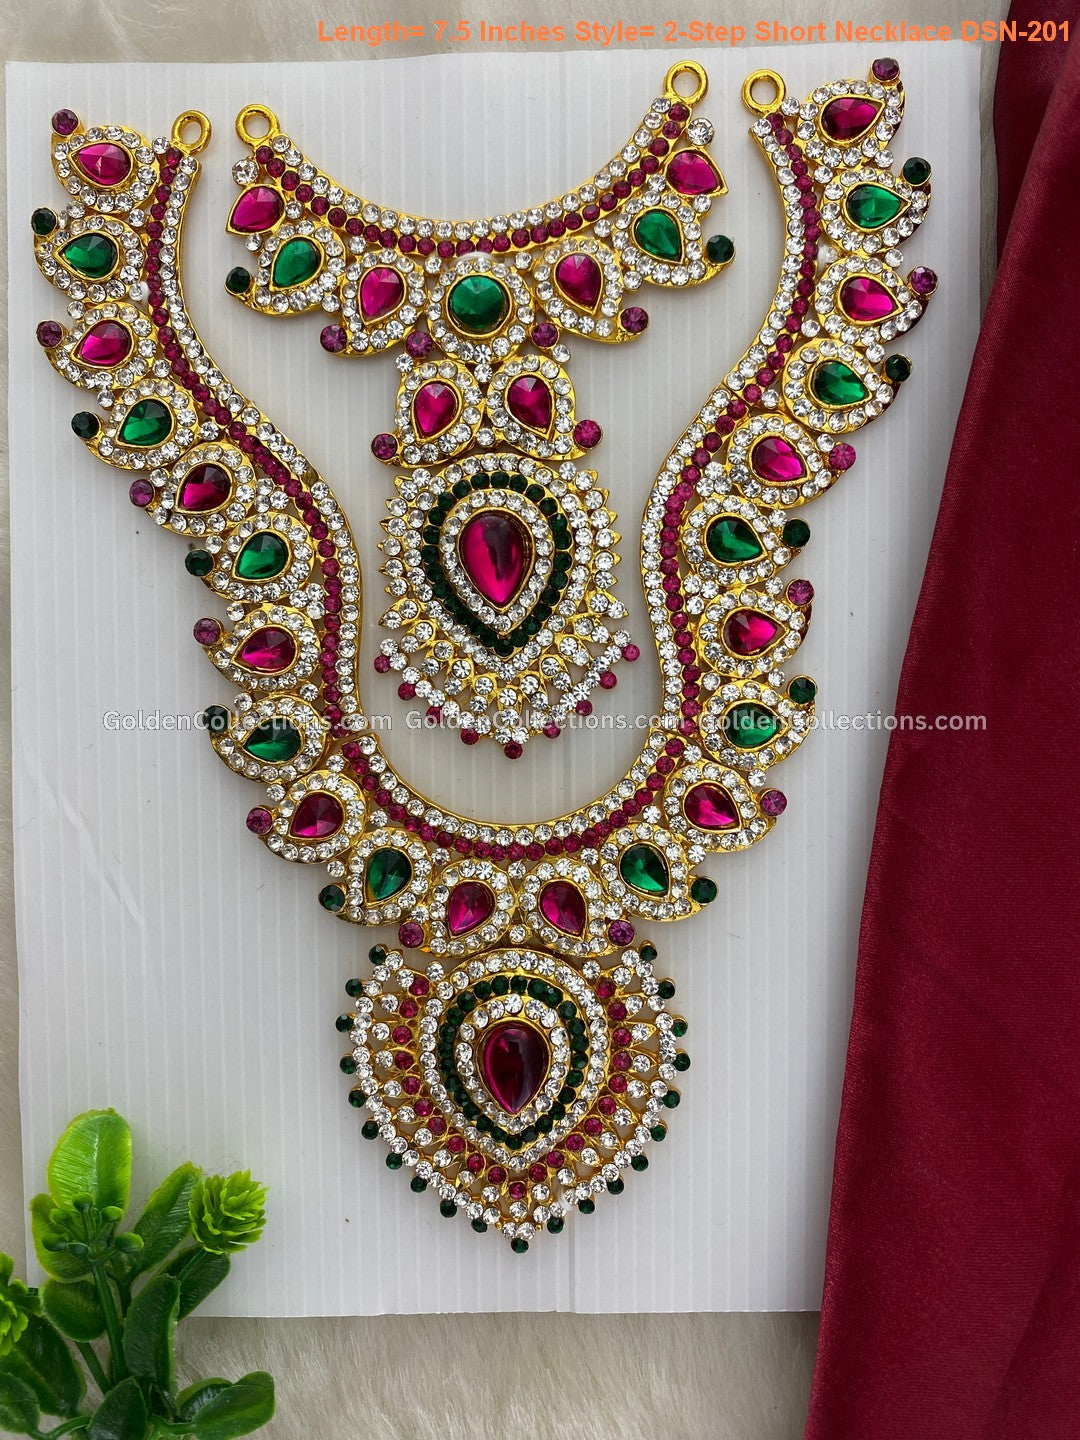 Goddess Lakshmi Short Necklace - Elegant Divine Design - DSN-201